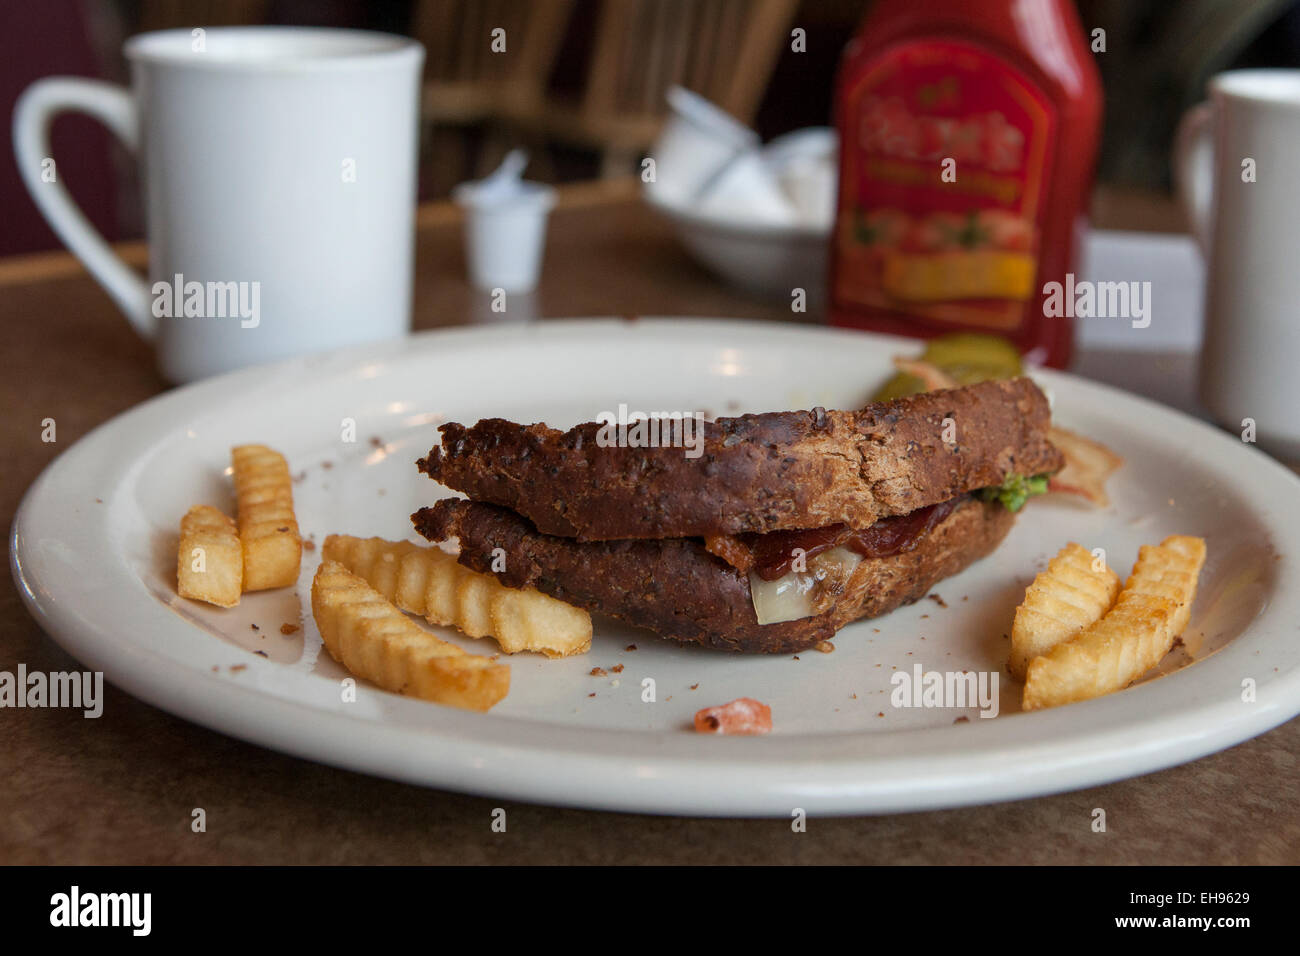 La crosta del sandwich incompiuto sulla piastra con patate fritte Foto Stock